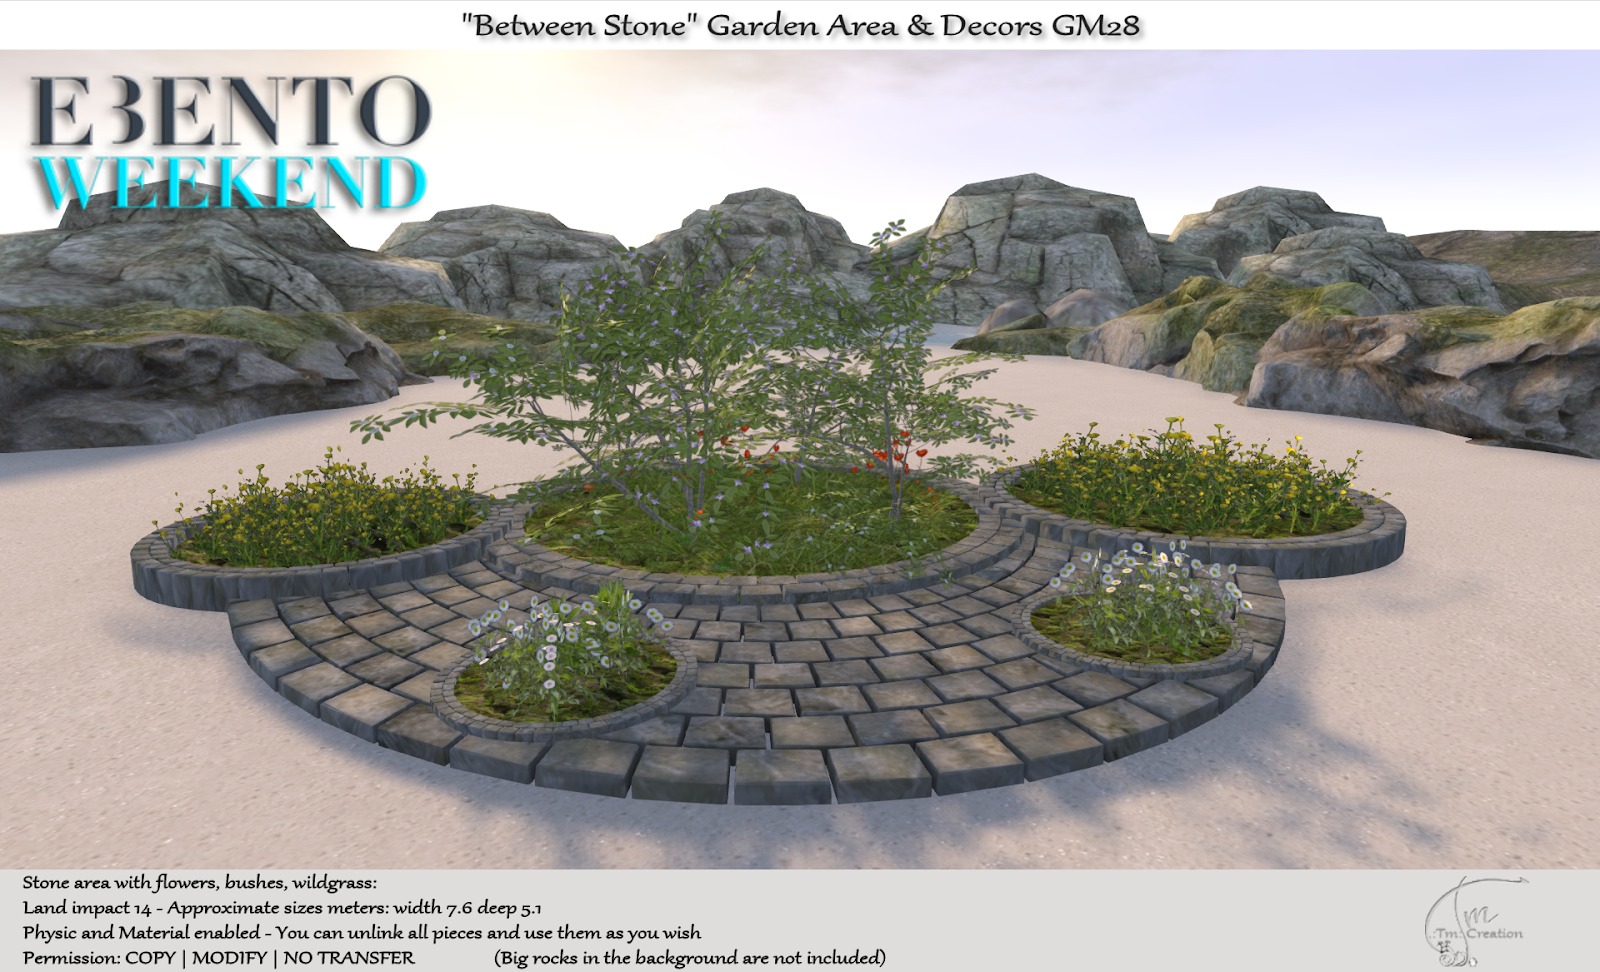 TM Creation – “Between Stone” Garden Area & Decors